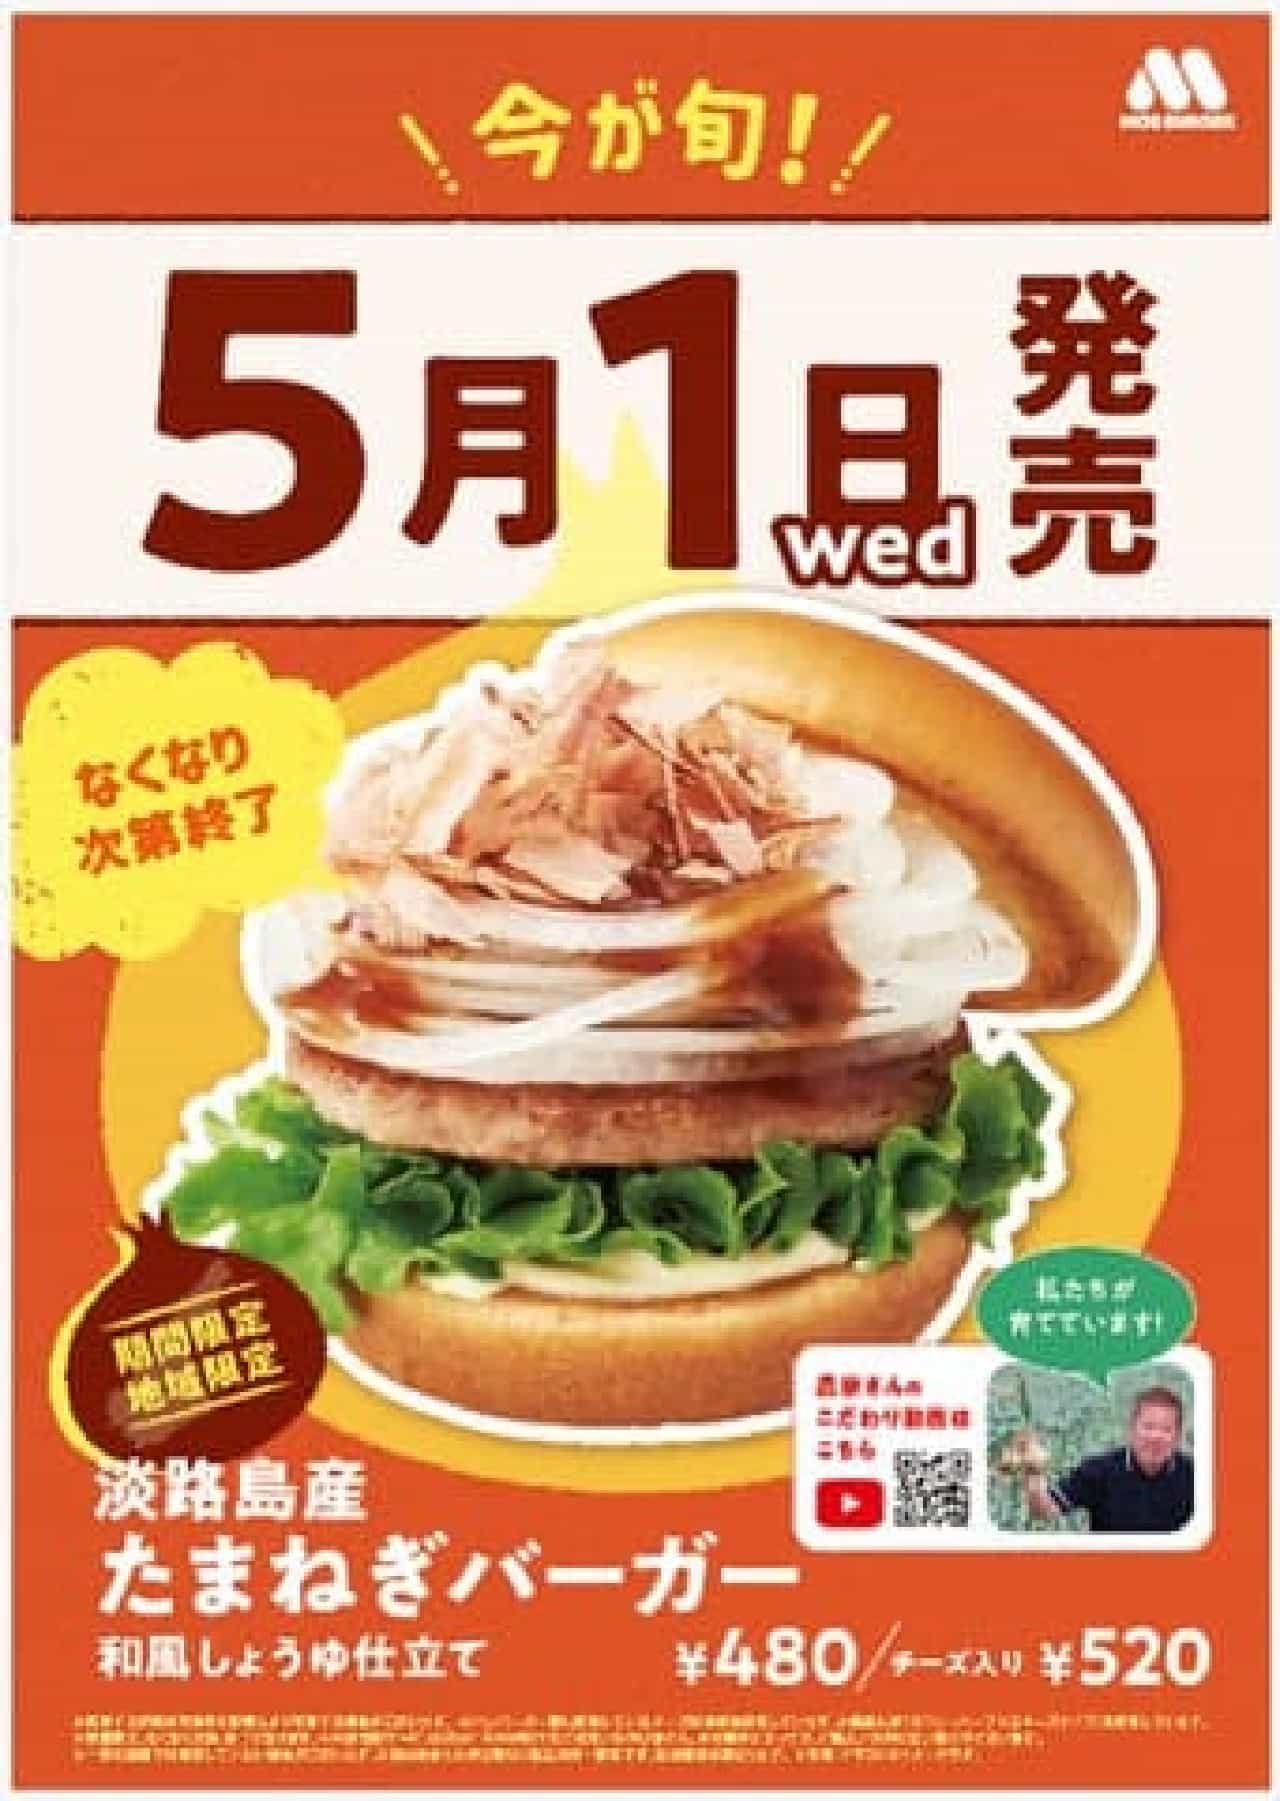 モスバーガーが淡路島産たまねぎを使用した限定バーガーを5月1日より関西・四国地域で販売開始、『淡路島産たまねぎ祭り』開催を4年ぶりに実施 画像3